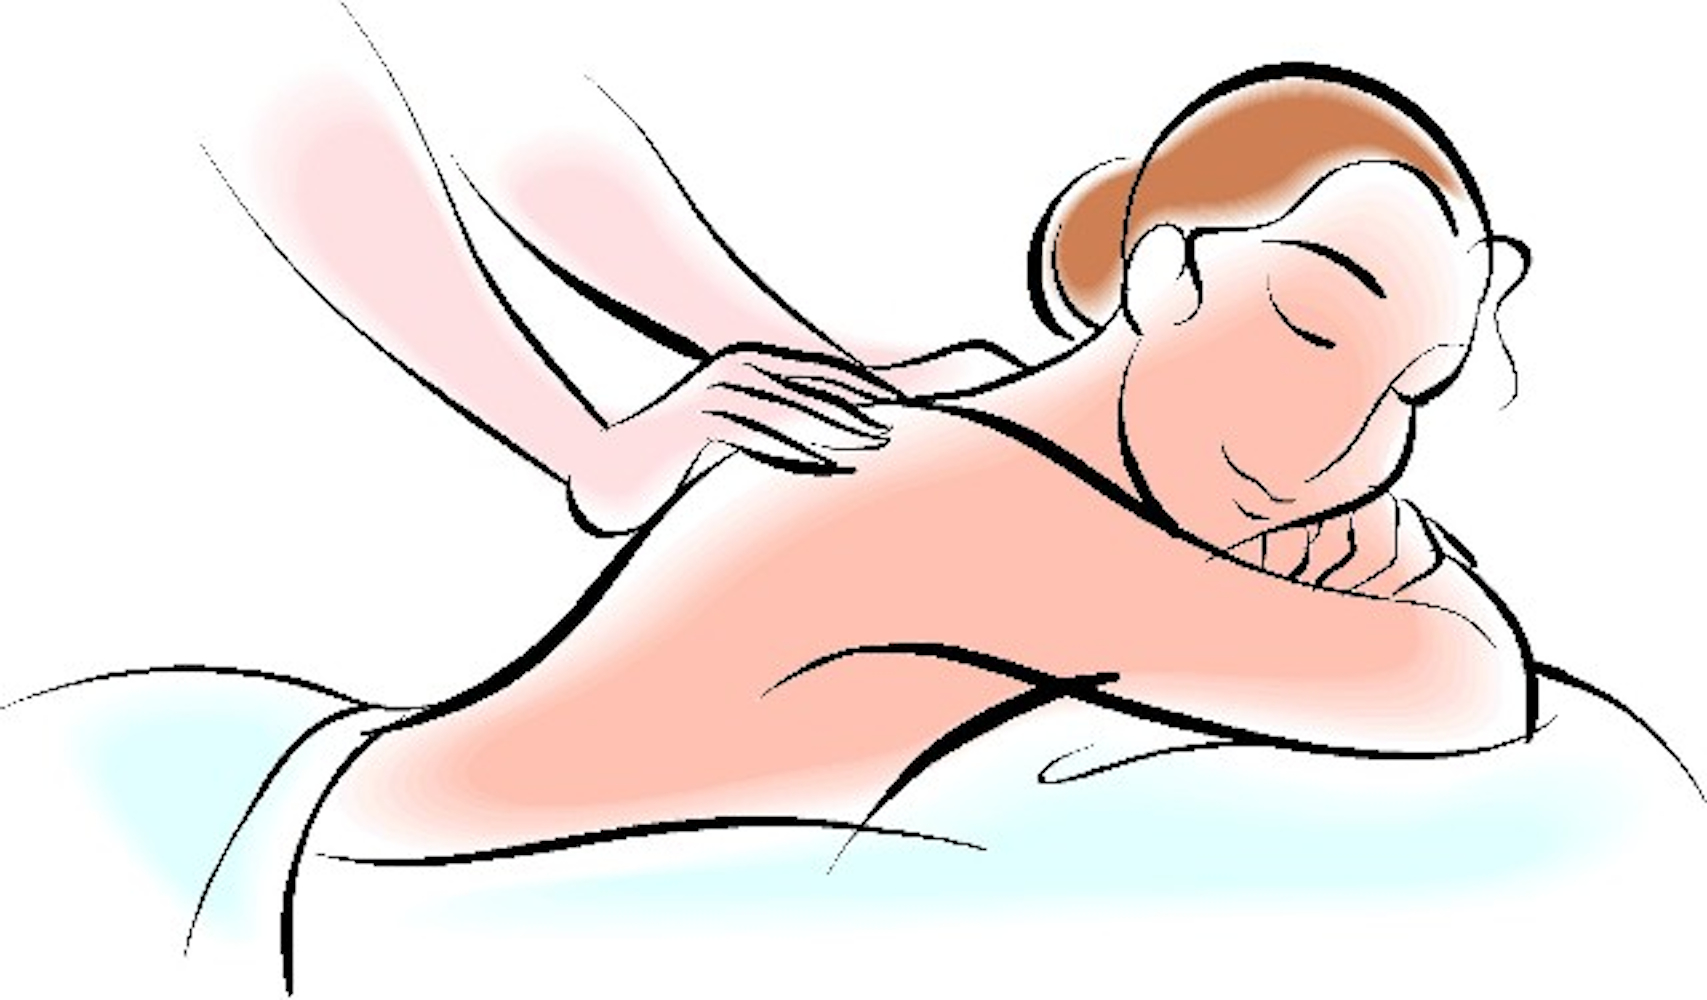 massages clipart